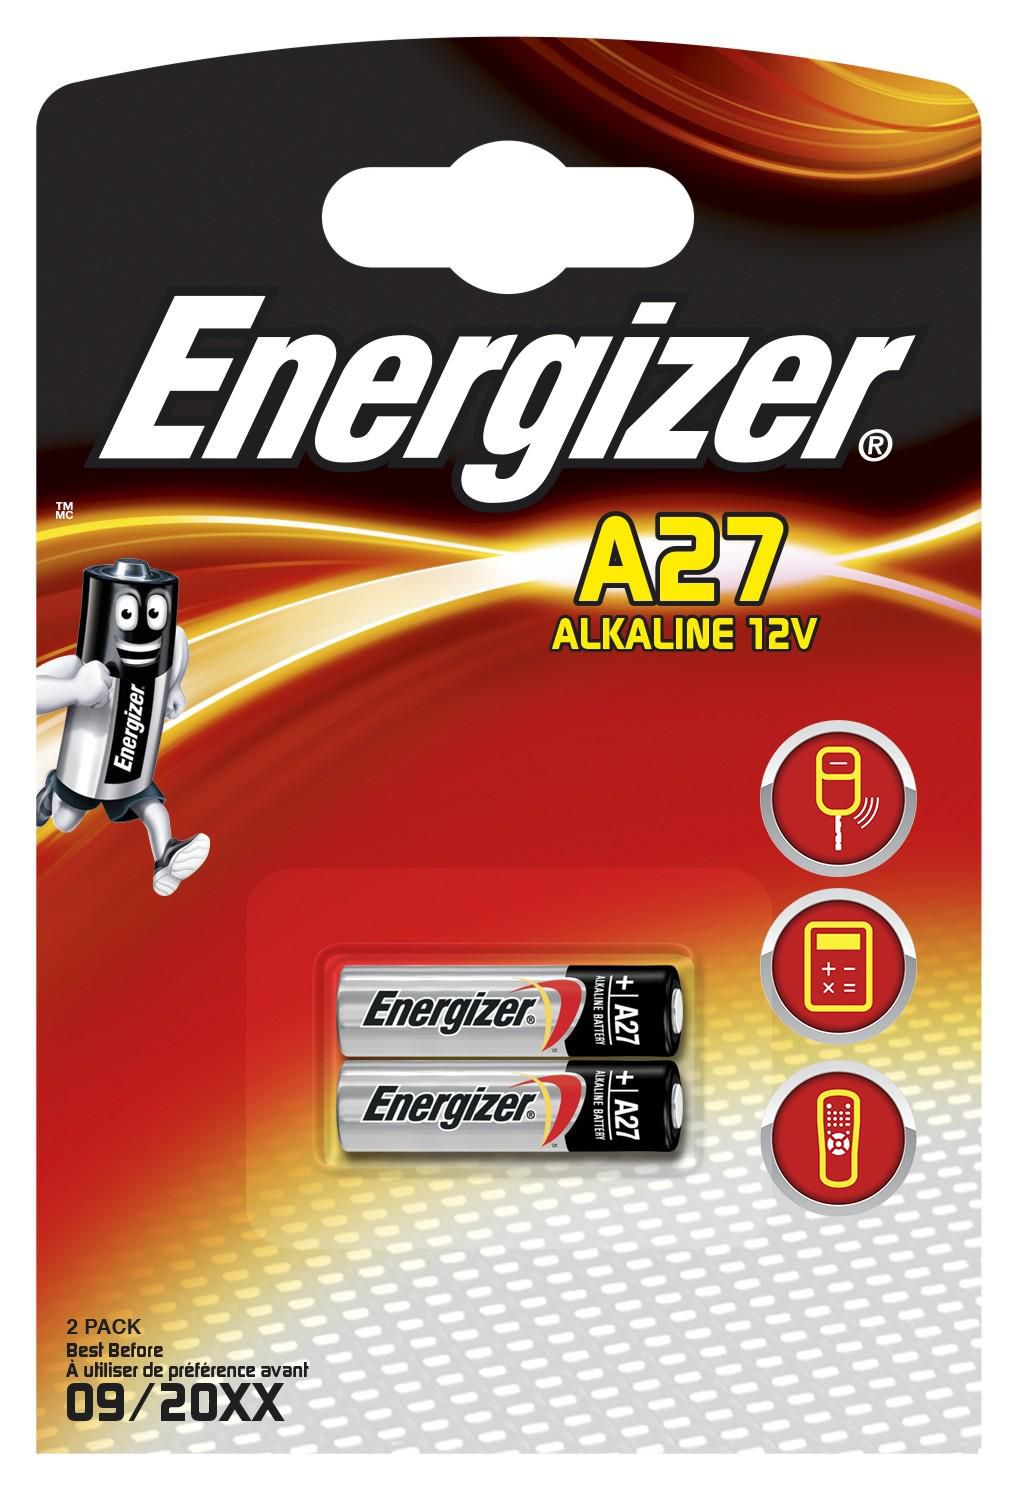 ENERGIZER Alkaline battery A27 12V 2-blister - Energizer alkaline battery, model A27, 12 Volt. 2 Bat